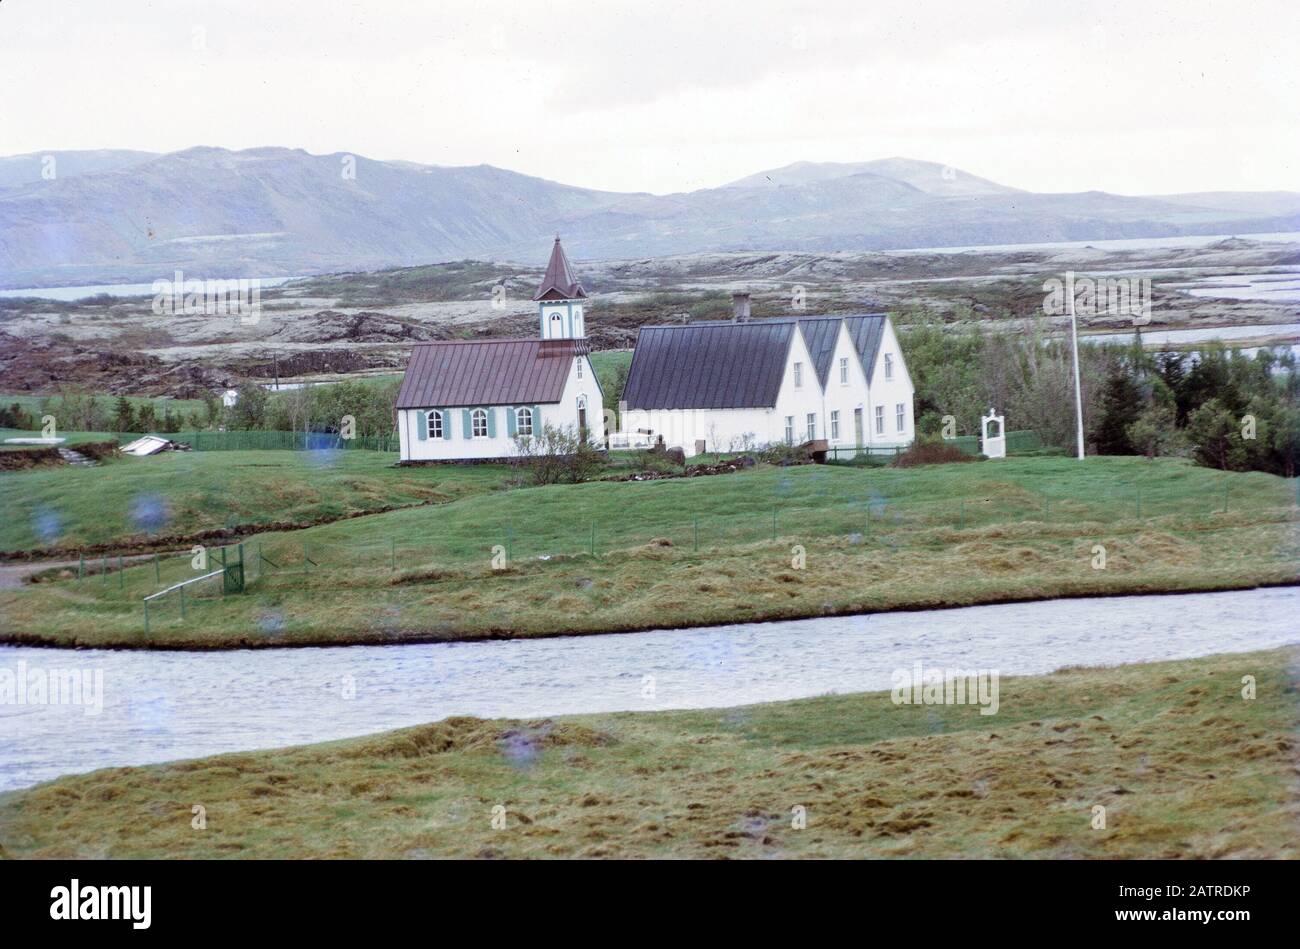 Photographie vernaculaire prise sur un film analogique de 35 mm transparent, considérée comme représentant une maison blanche et grise près du lac et du champ vert d'herbe, 1970. () Banque D'Images